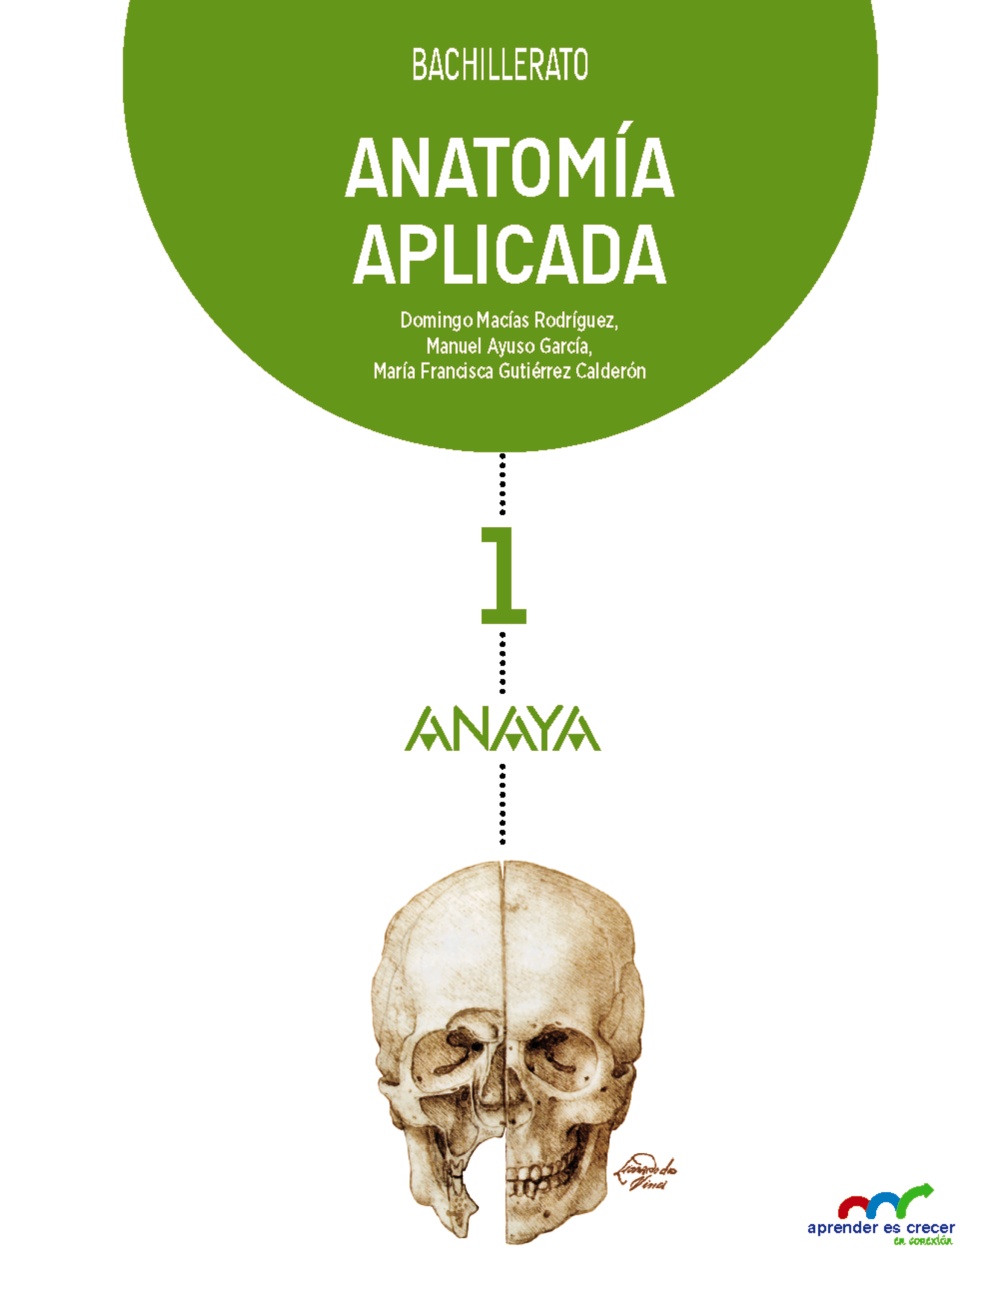 Solucionario Anatomia Aplicada 1 Bachillerato Anaya Aprender es Crecer PDF Ejercicios Resueltos-pdf